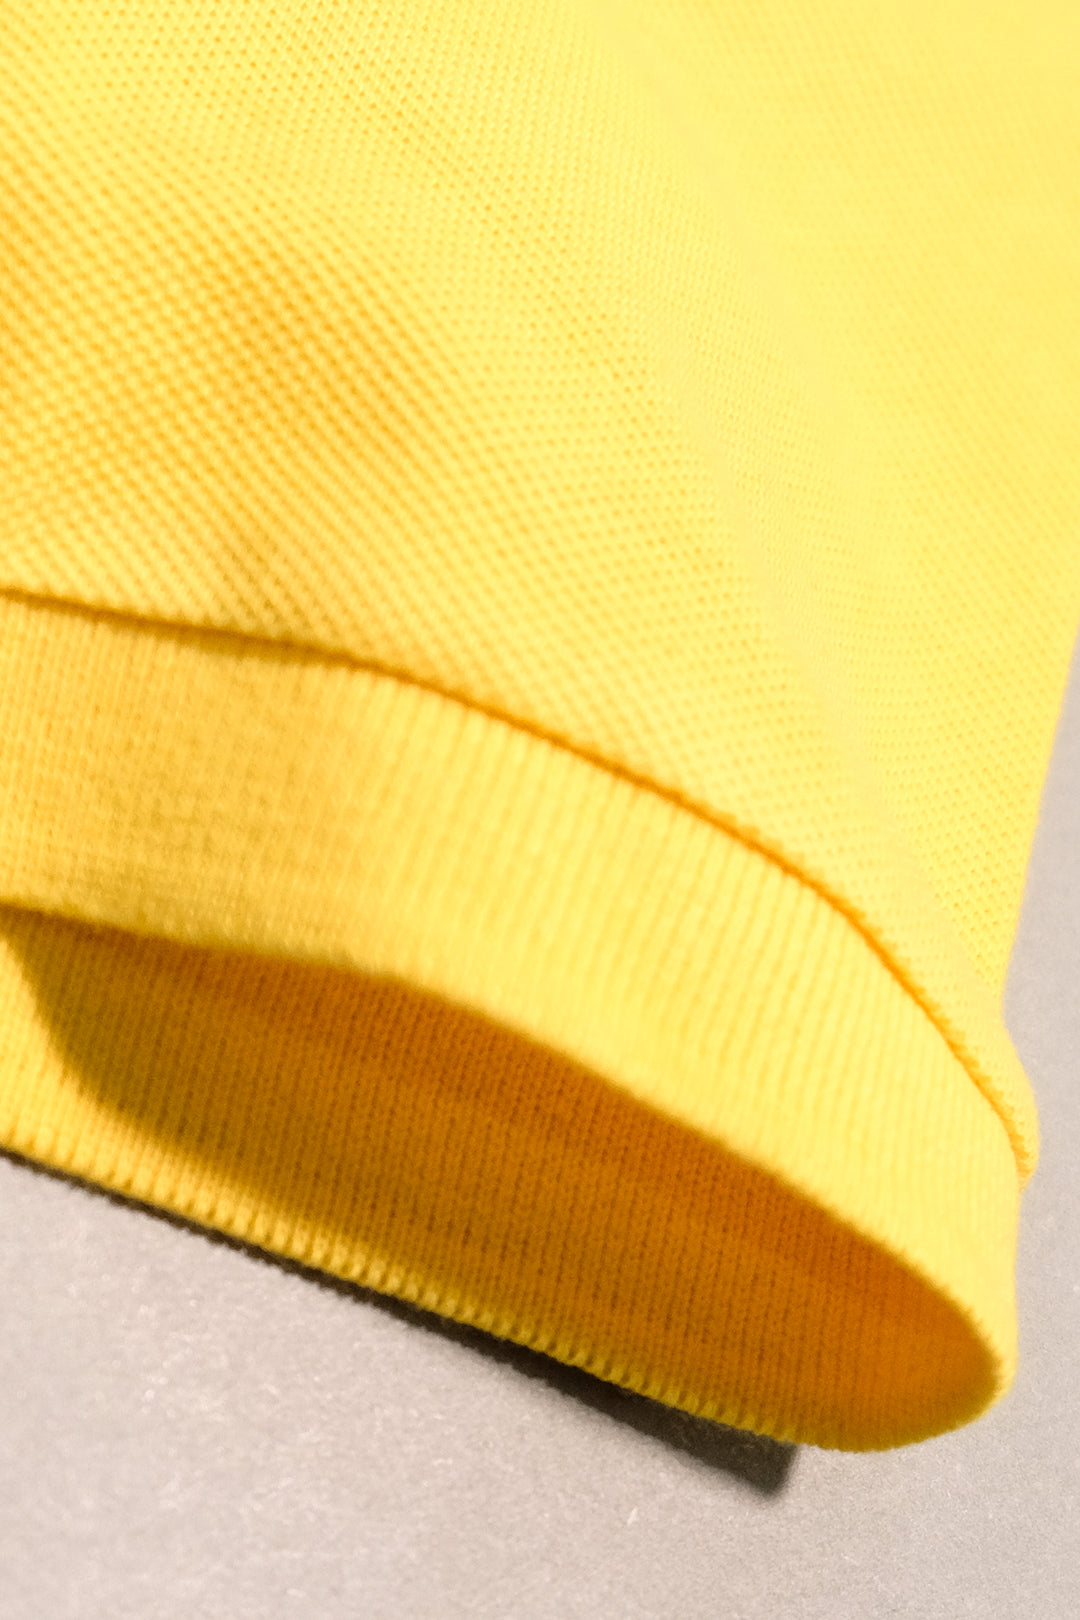 Tri-Color Yellow Polo - P21 - MP0043R